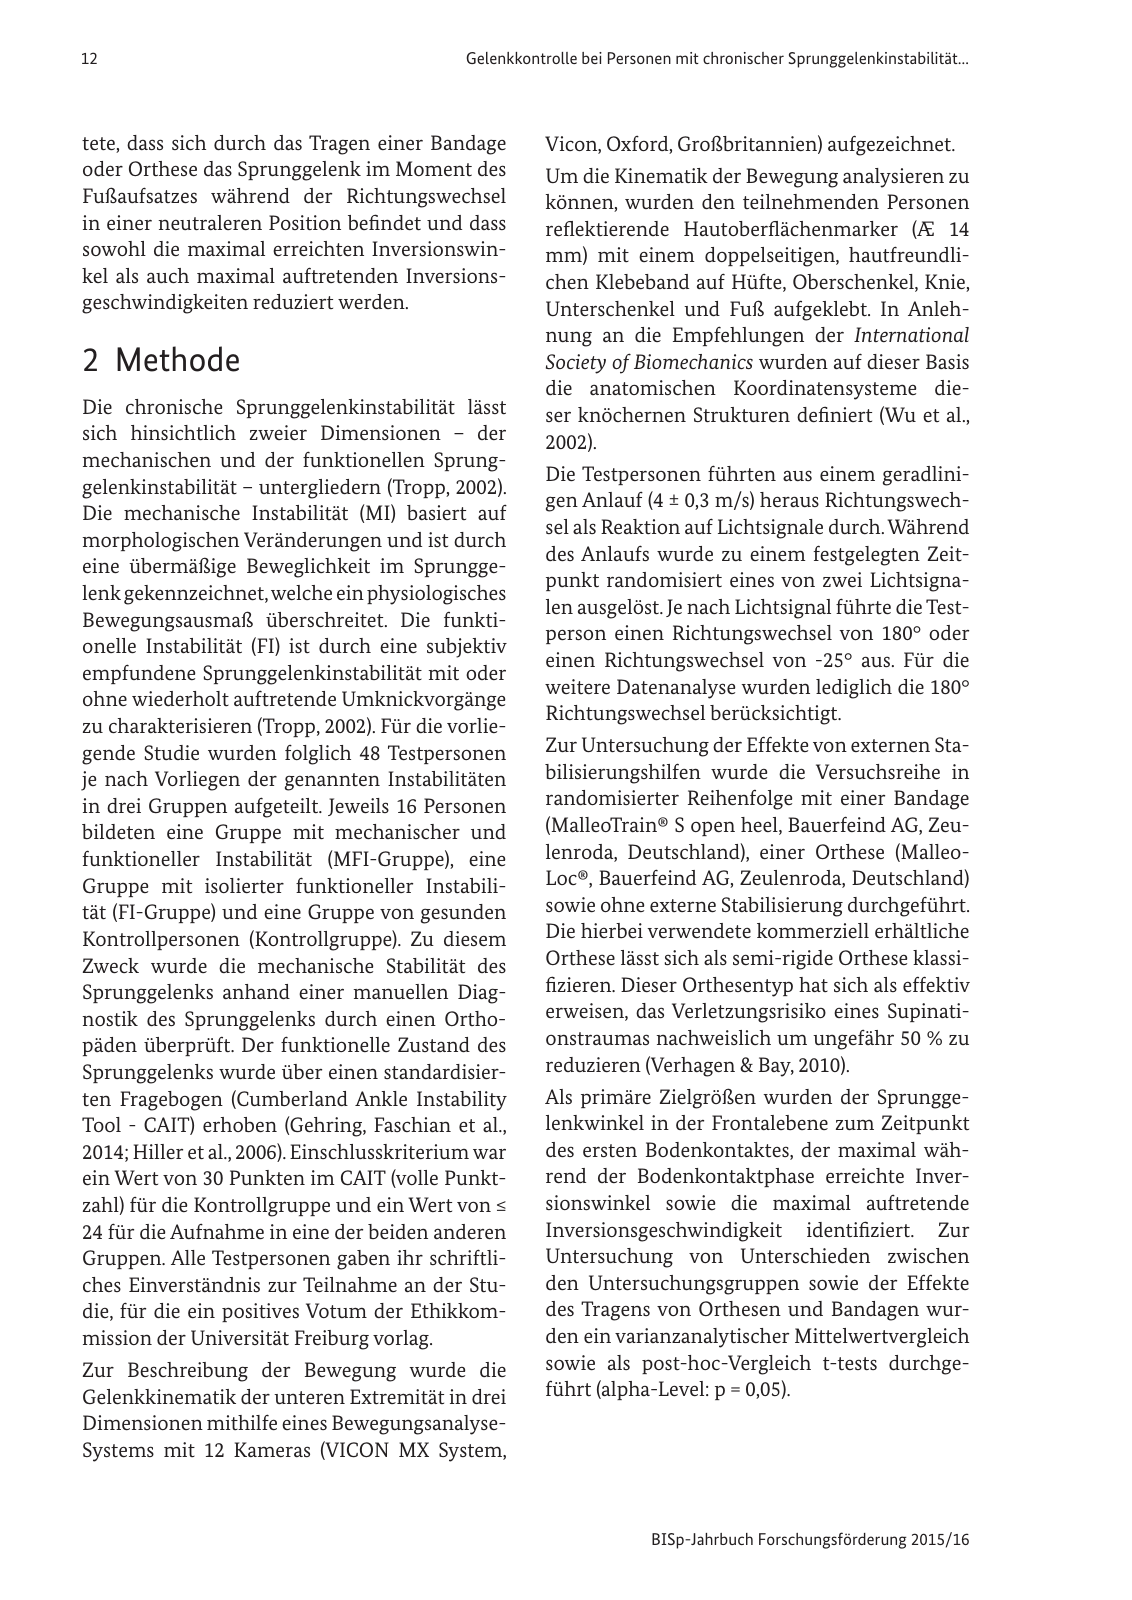 Vorschau BISp-Jahrbuch Forschungsförderung 2015/16 Seite 14